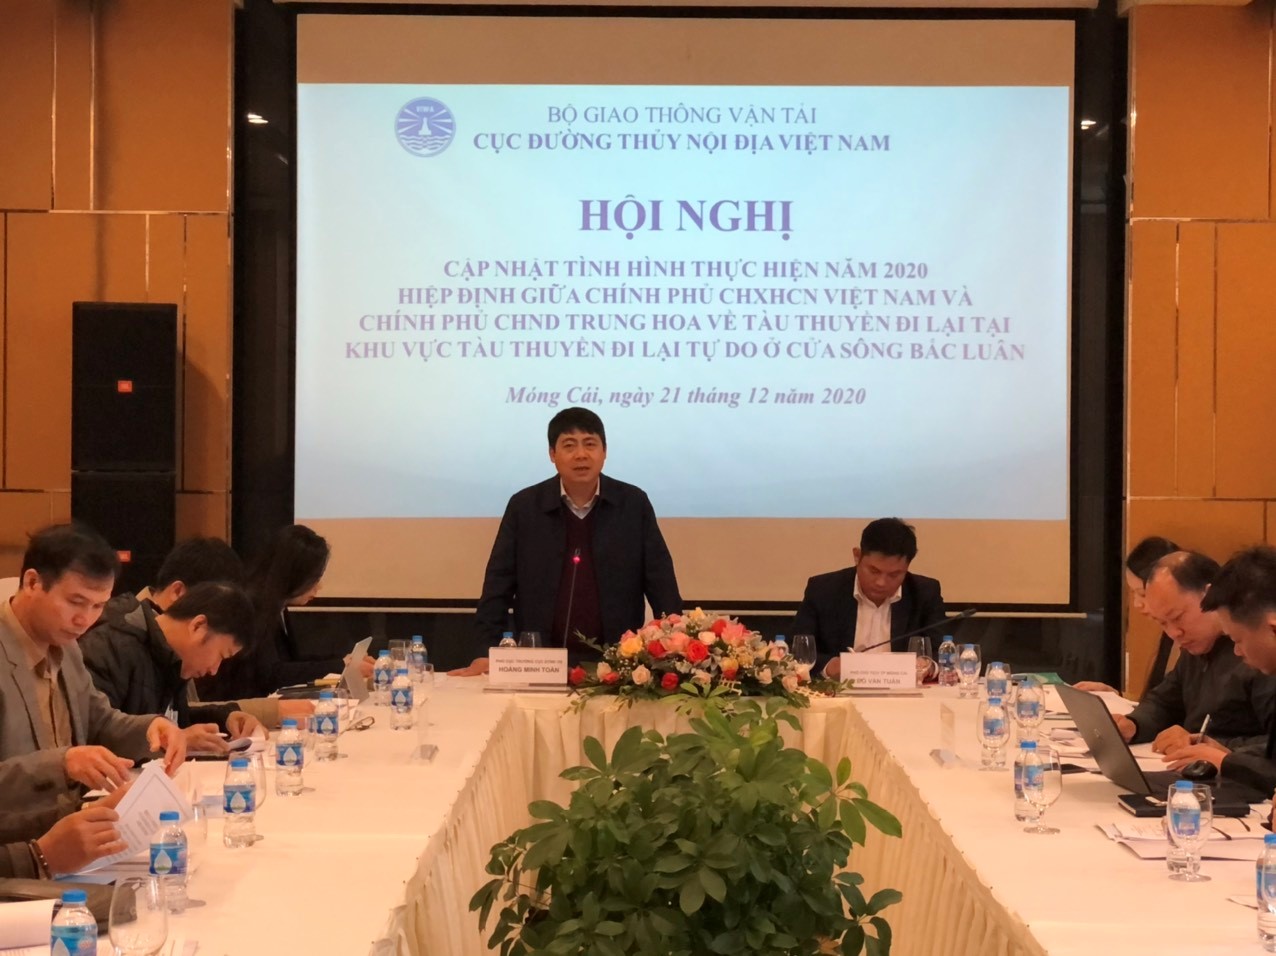 Tình hình triển khai Hiệp định Việt Nam – Trung Quốc về tàu thuyền đi lại tại khu vực tàu thuyền đi lại tự do ở cửa sông Bắc Luân trong năm 2020